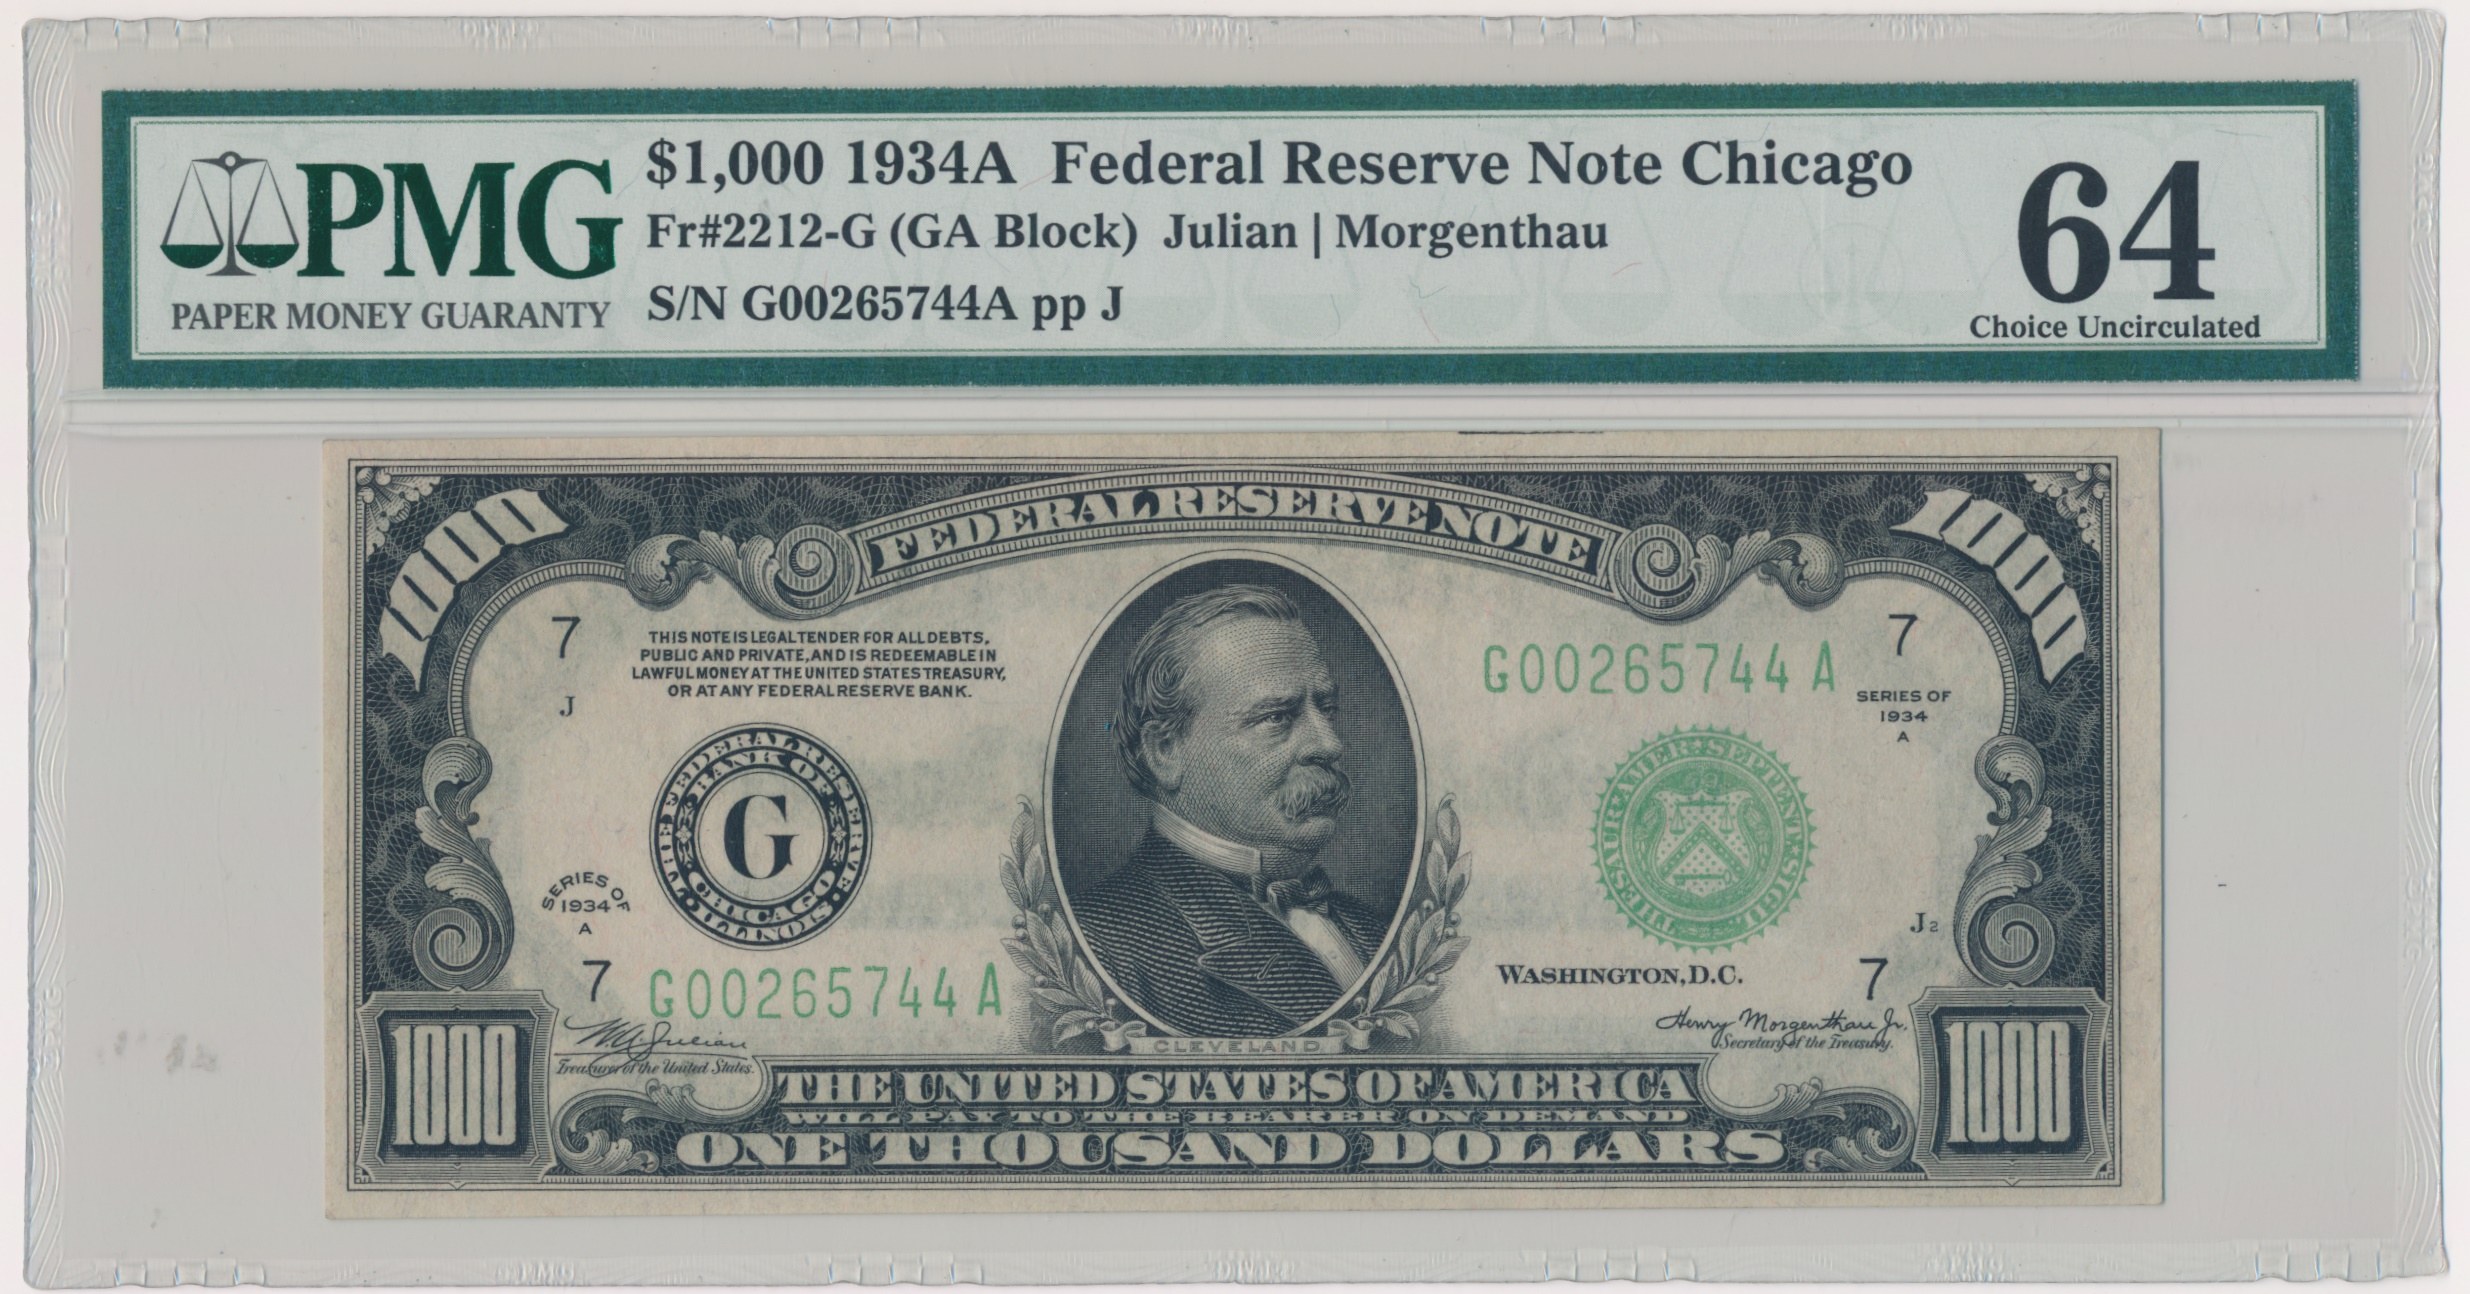 Получить 1000 долларов. 1000 Долларовая купюра. Банкнота доллара США 1934. 1000 Долларовая купюра США. 1949 Federal Reserve Note.